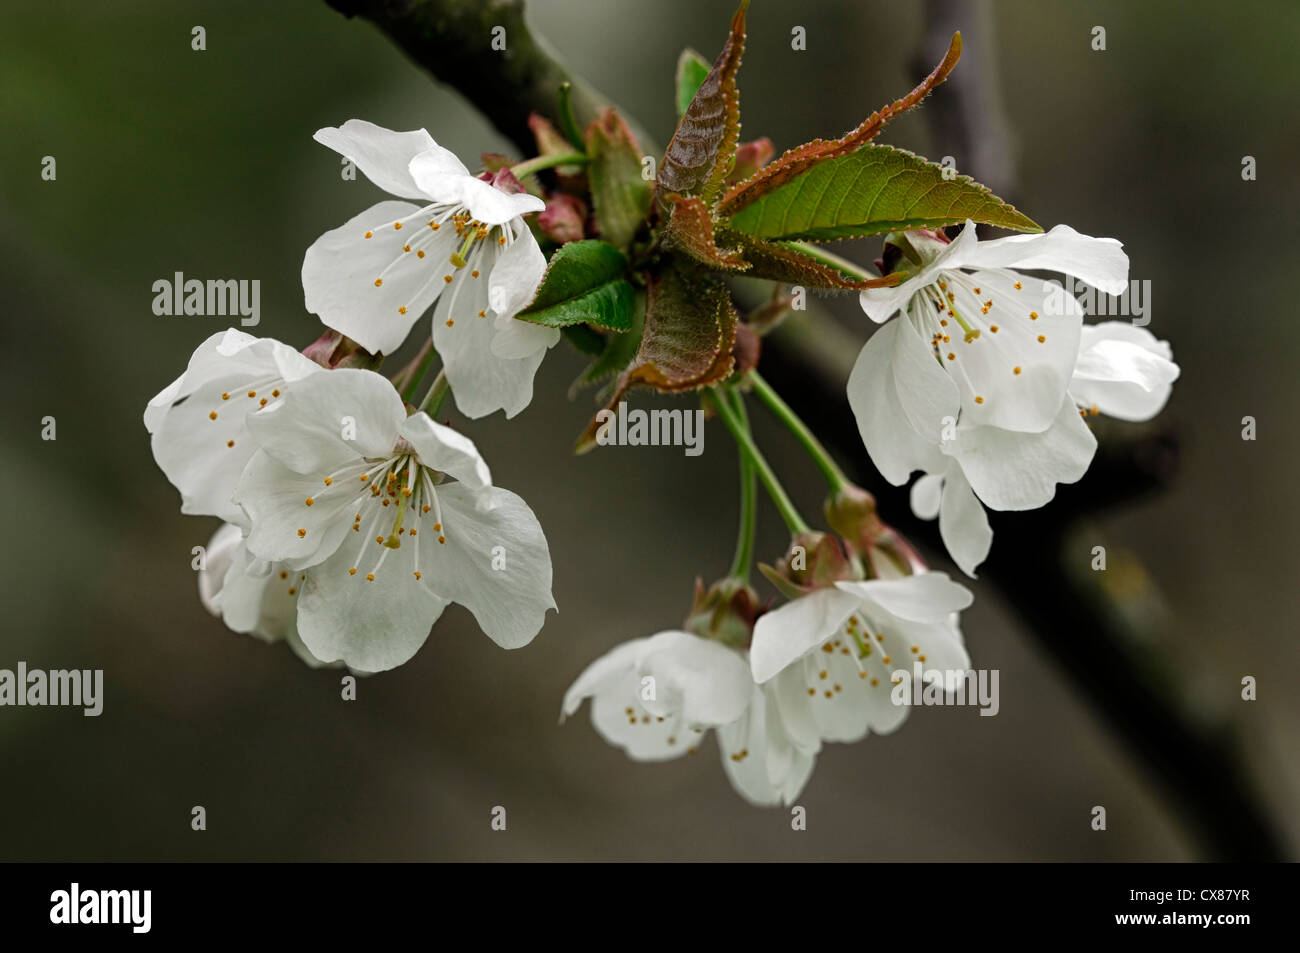 Prunus avium syn synonyme de cerise sauvage cerise bird cherry gean white fleurs printemps fleur blanc Banque D'Images